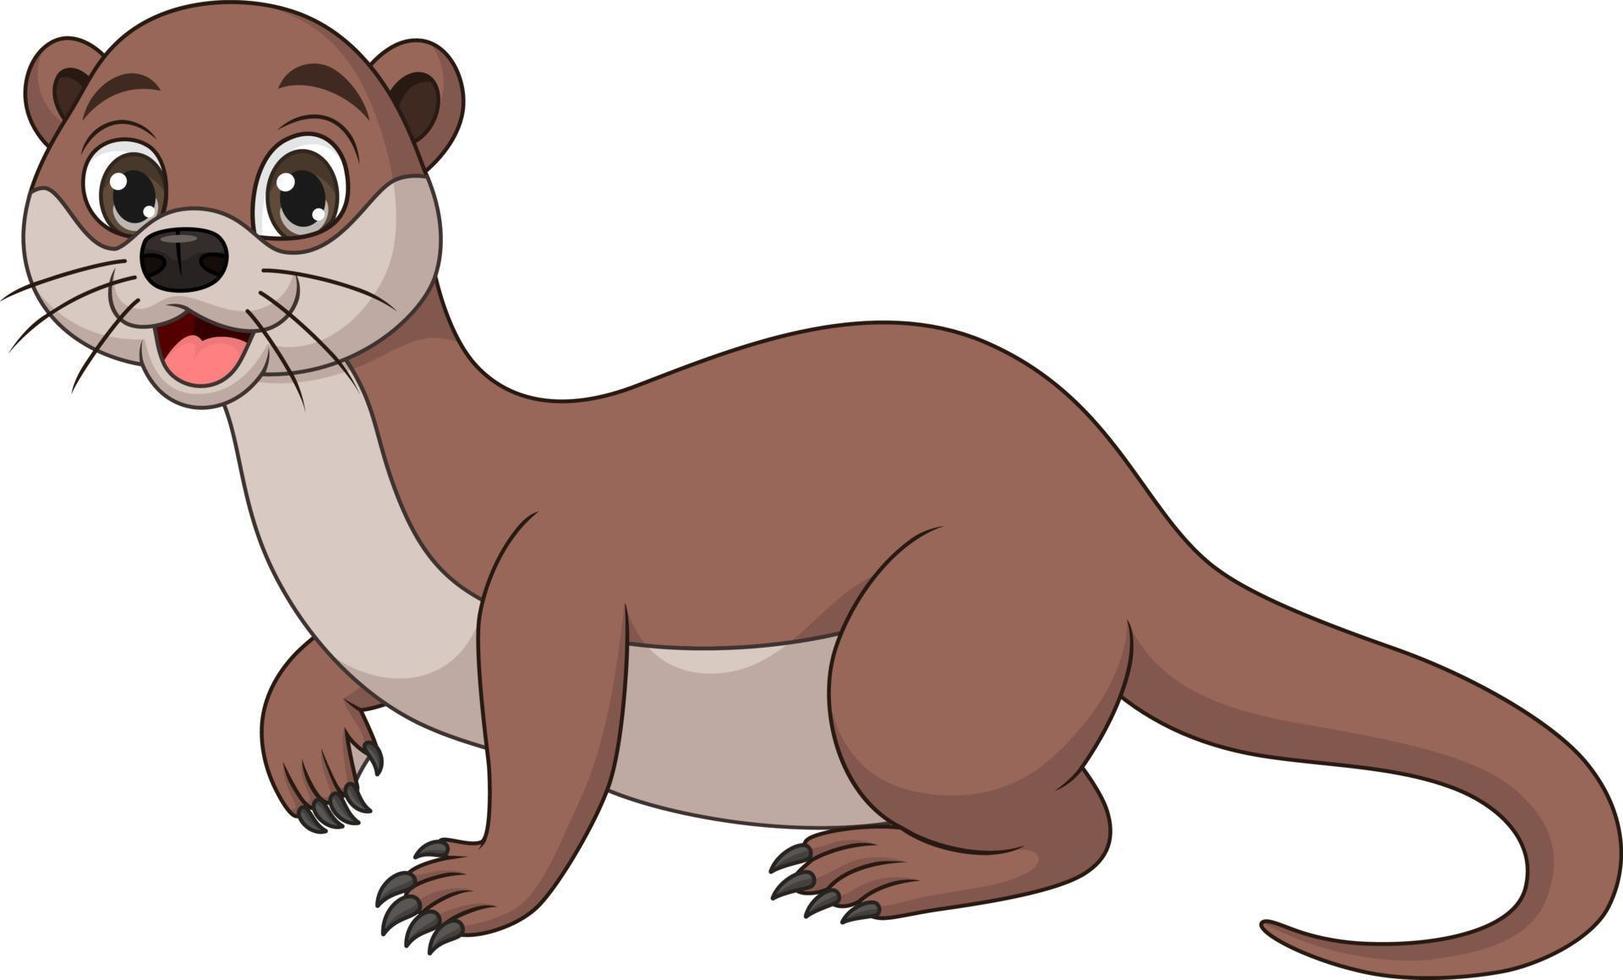 Cute little otter cartoon posing vector